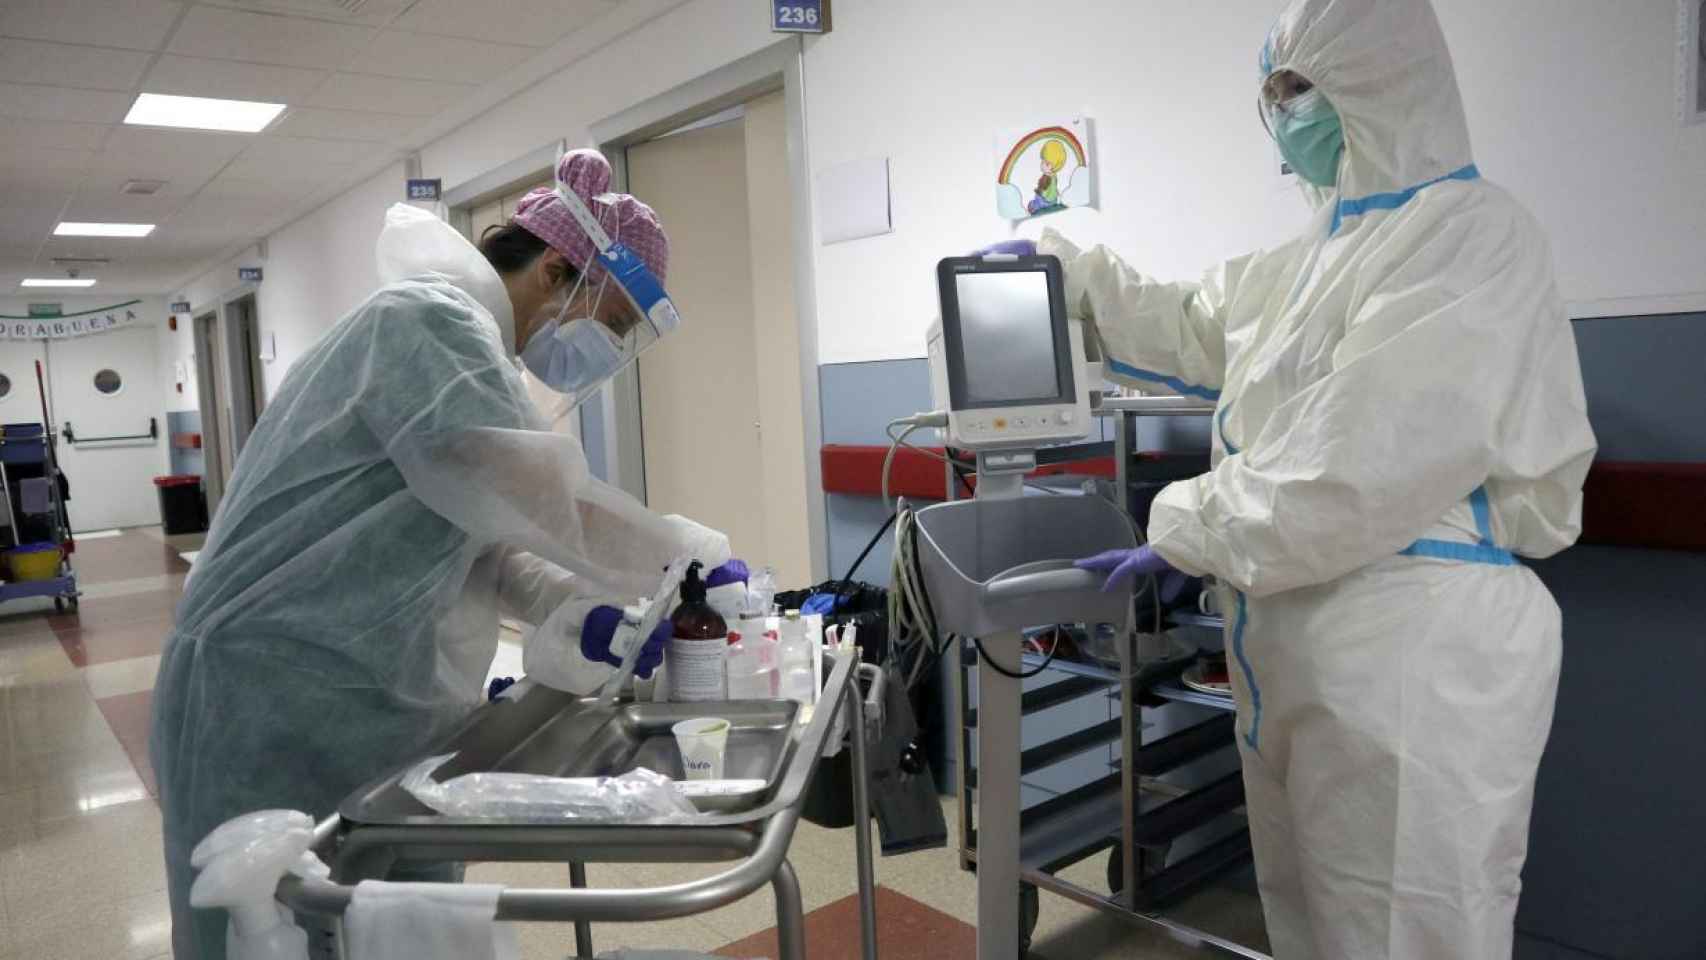 Imagen del interior de un hospital durante la pandemia de la Covid-19.